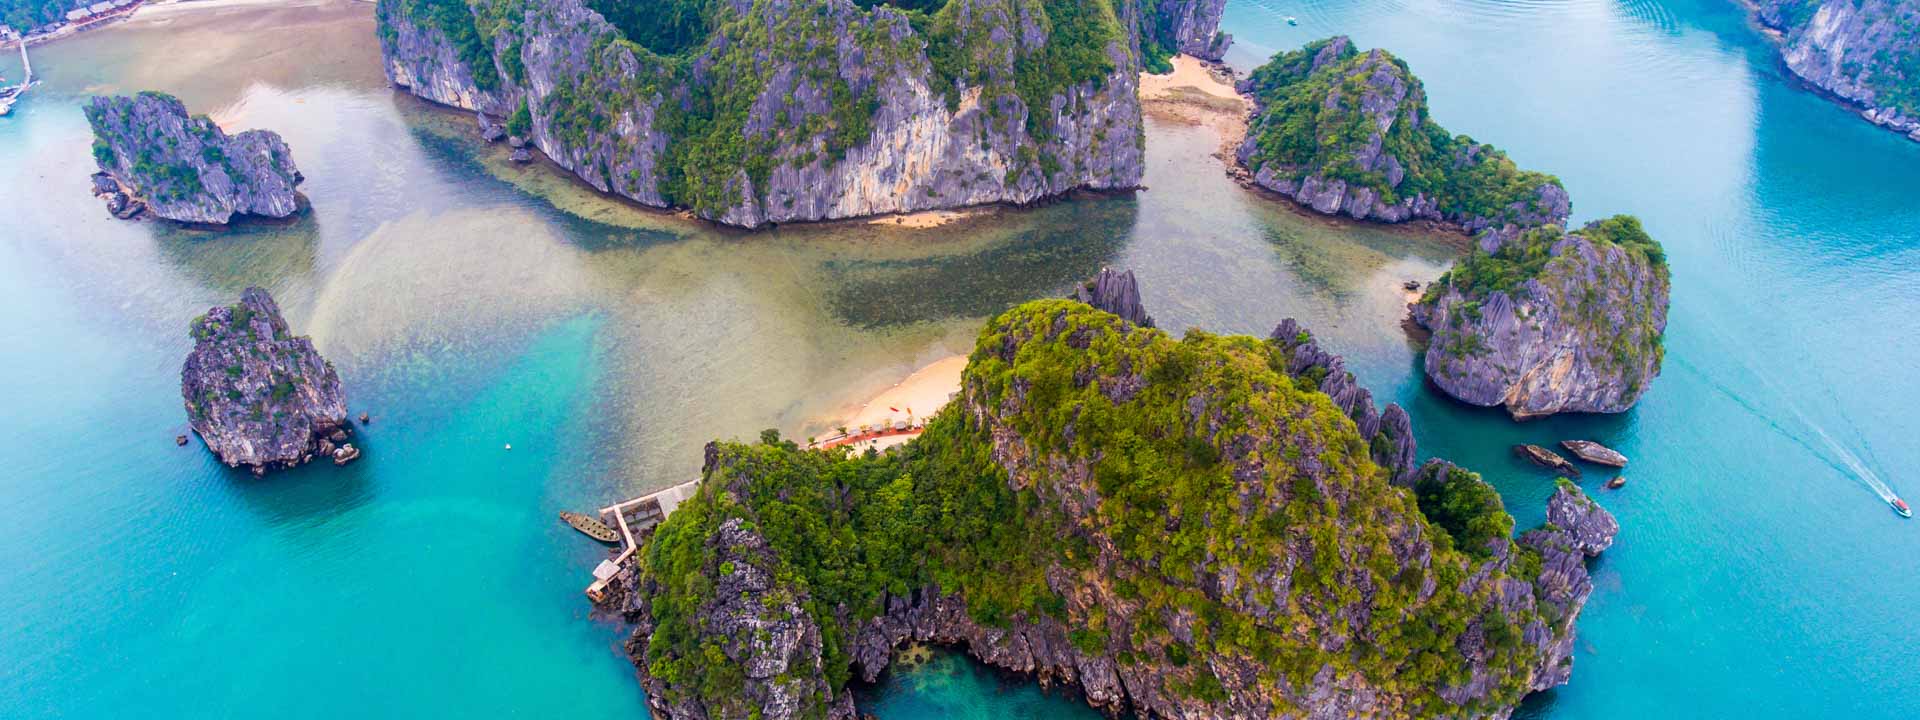 Eccelente viaggio di lusso in Vietnam e Cambogia 15 giorni